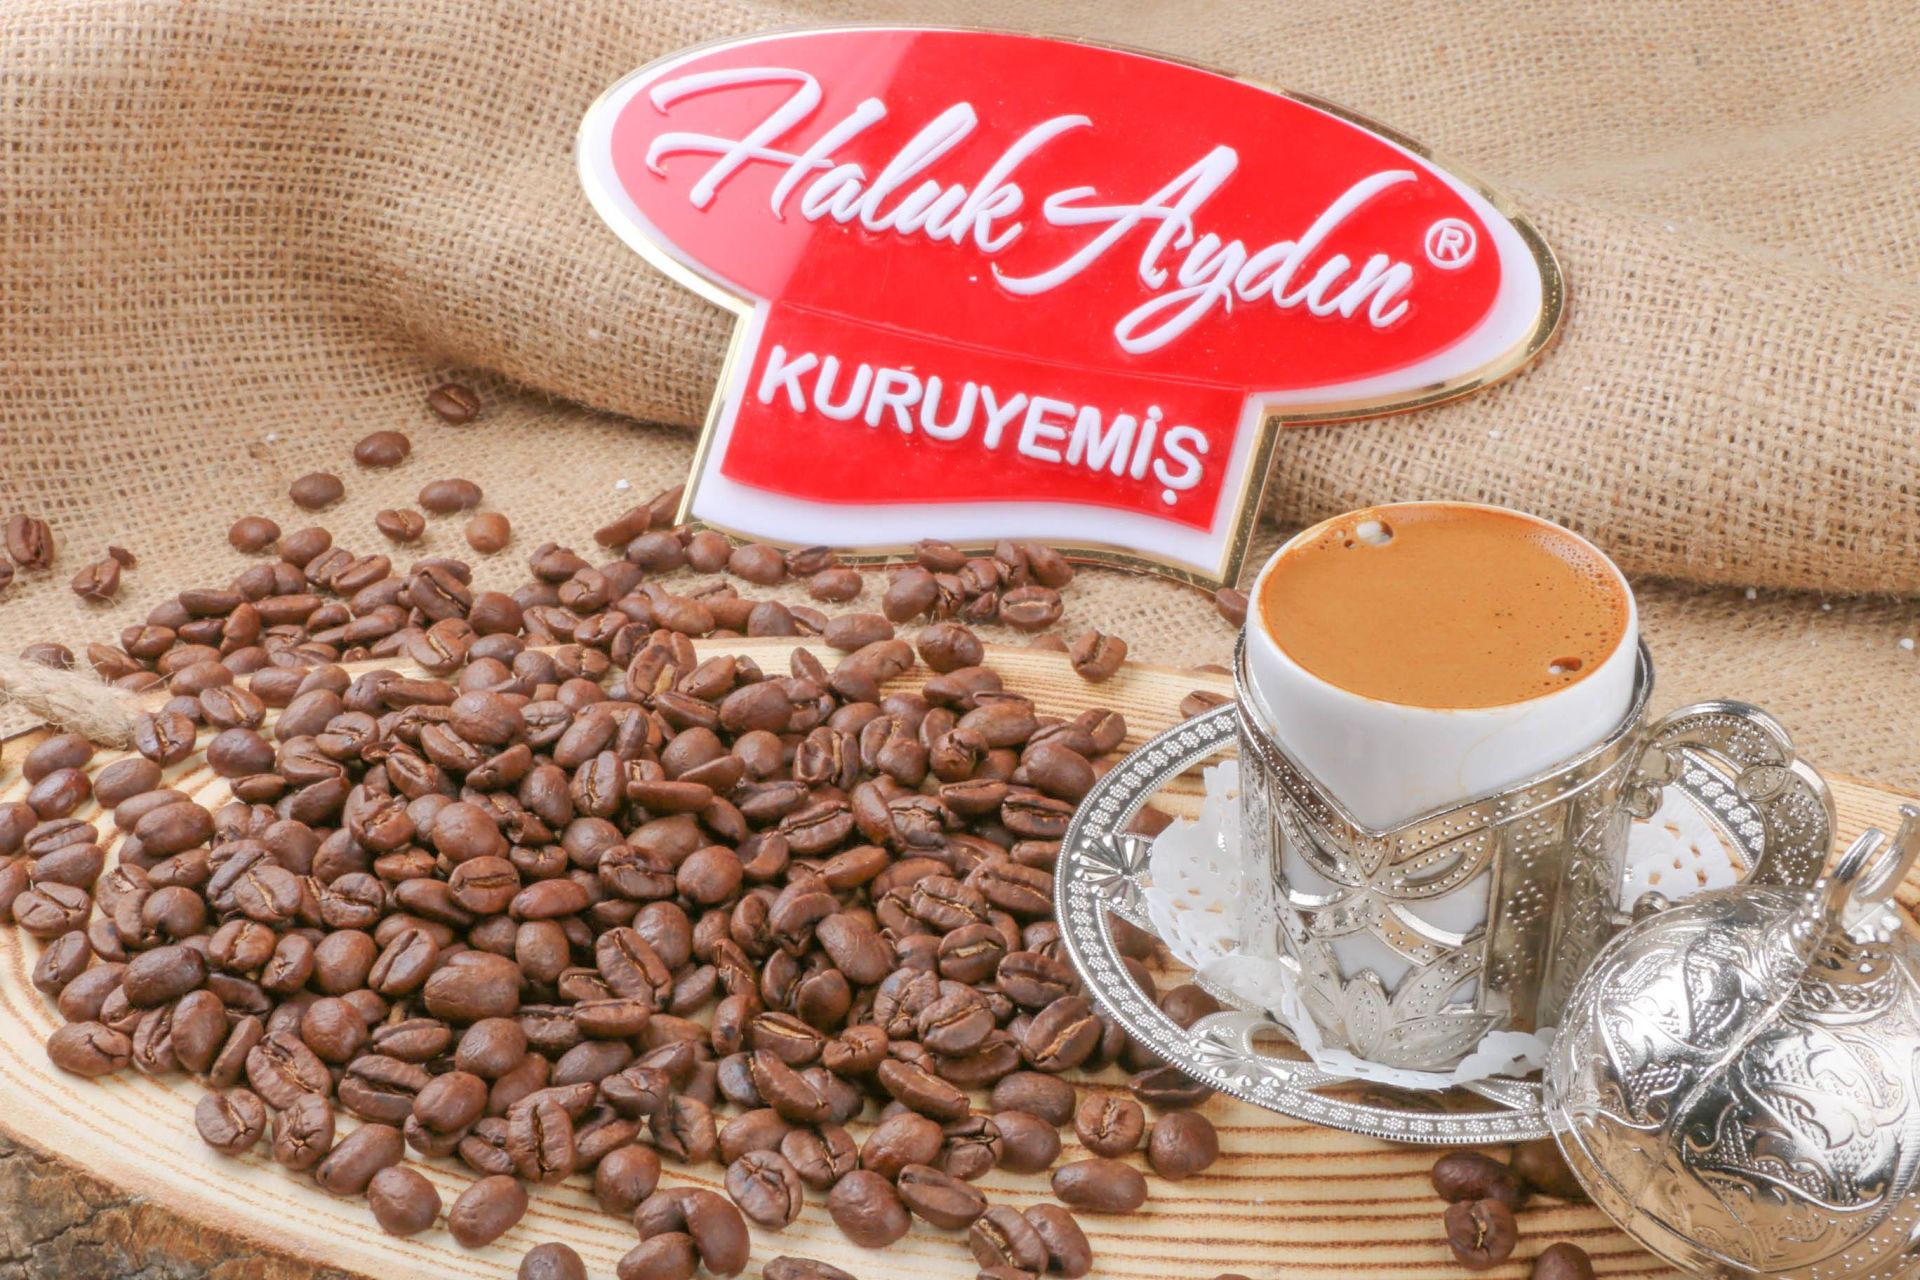 Haluk Aydın Kuruyemiş Türk Kahvesi ÇEKİRDEĞİ 250 Gr